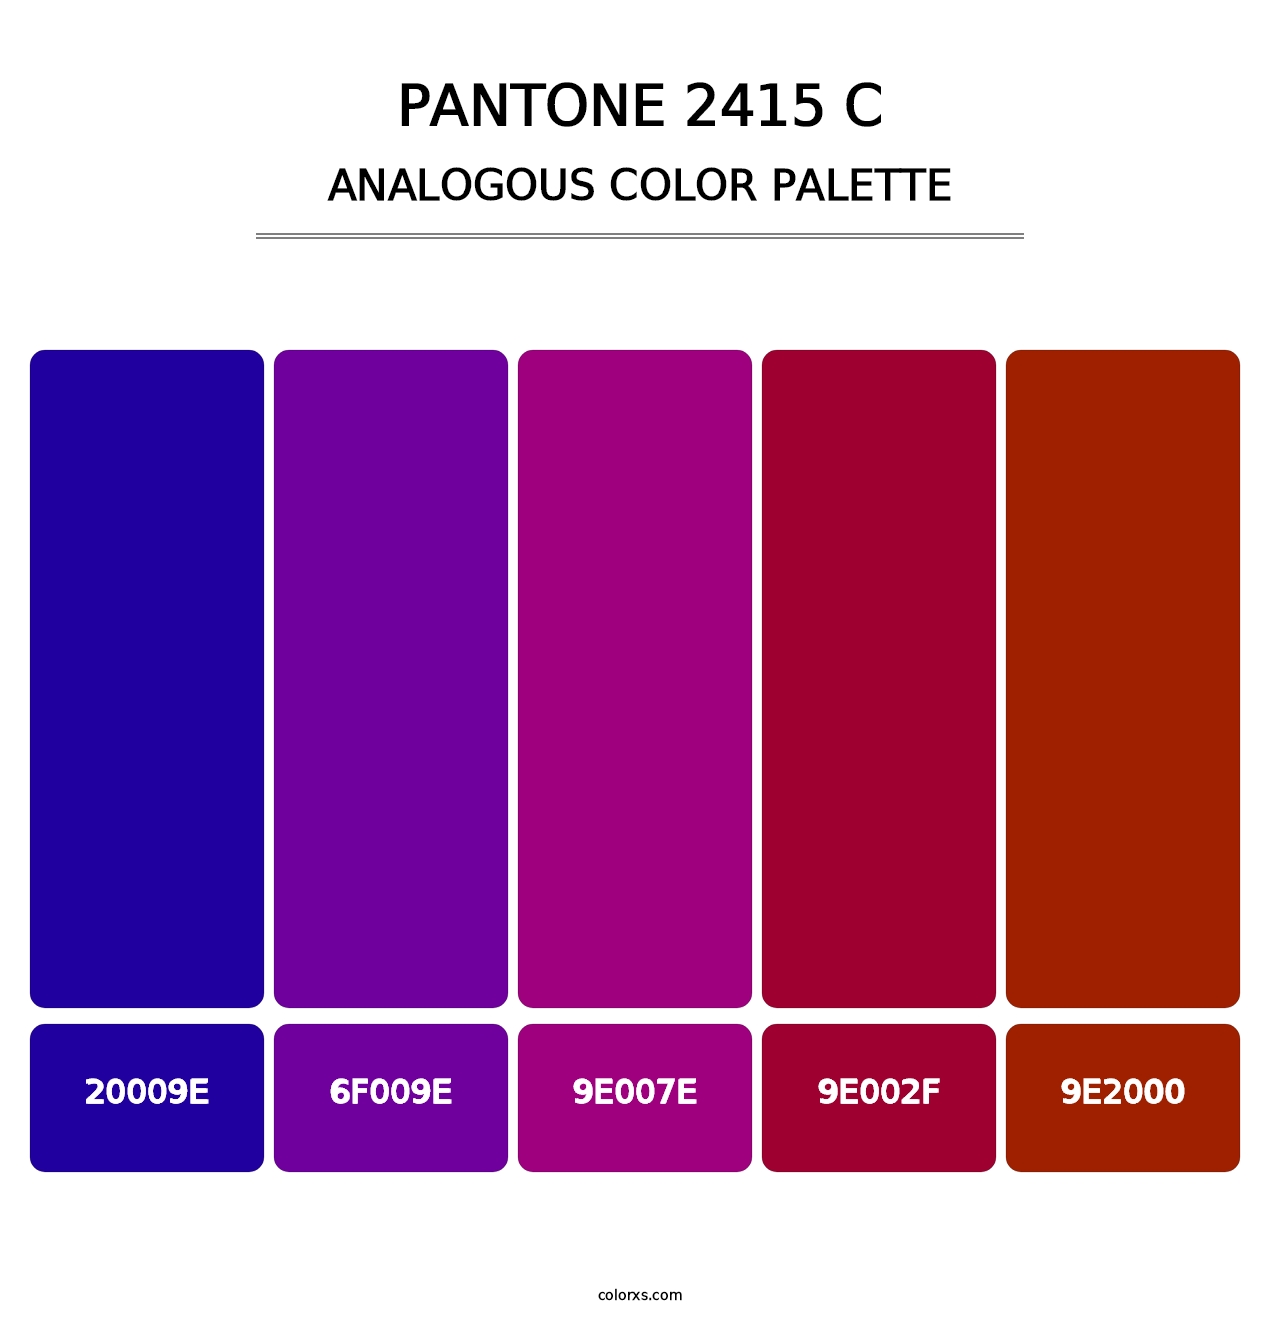 PANTONE 2415 C - Analogous Color Palette